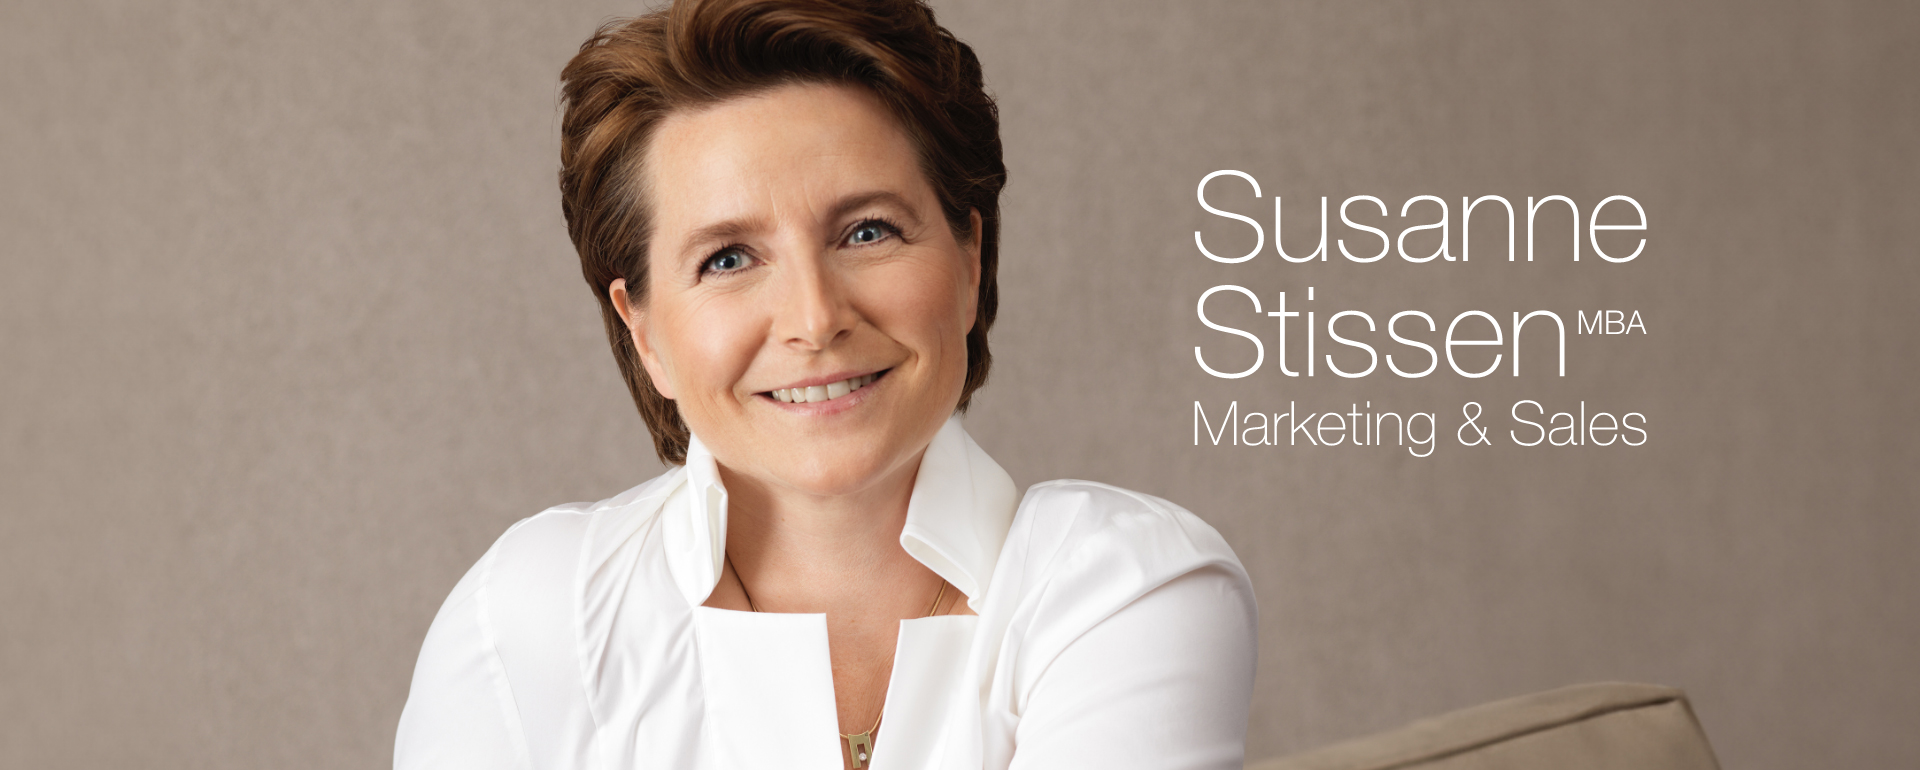 Susanne Stissen, MBA, Marketing & Sales